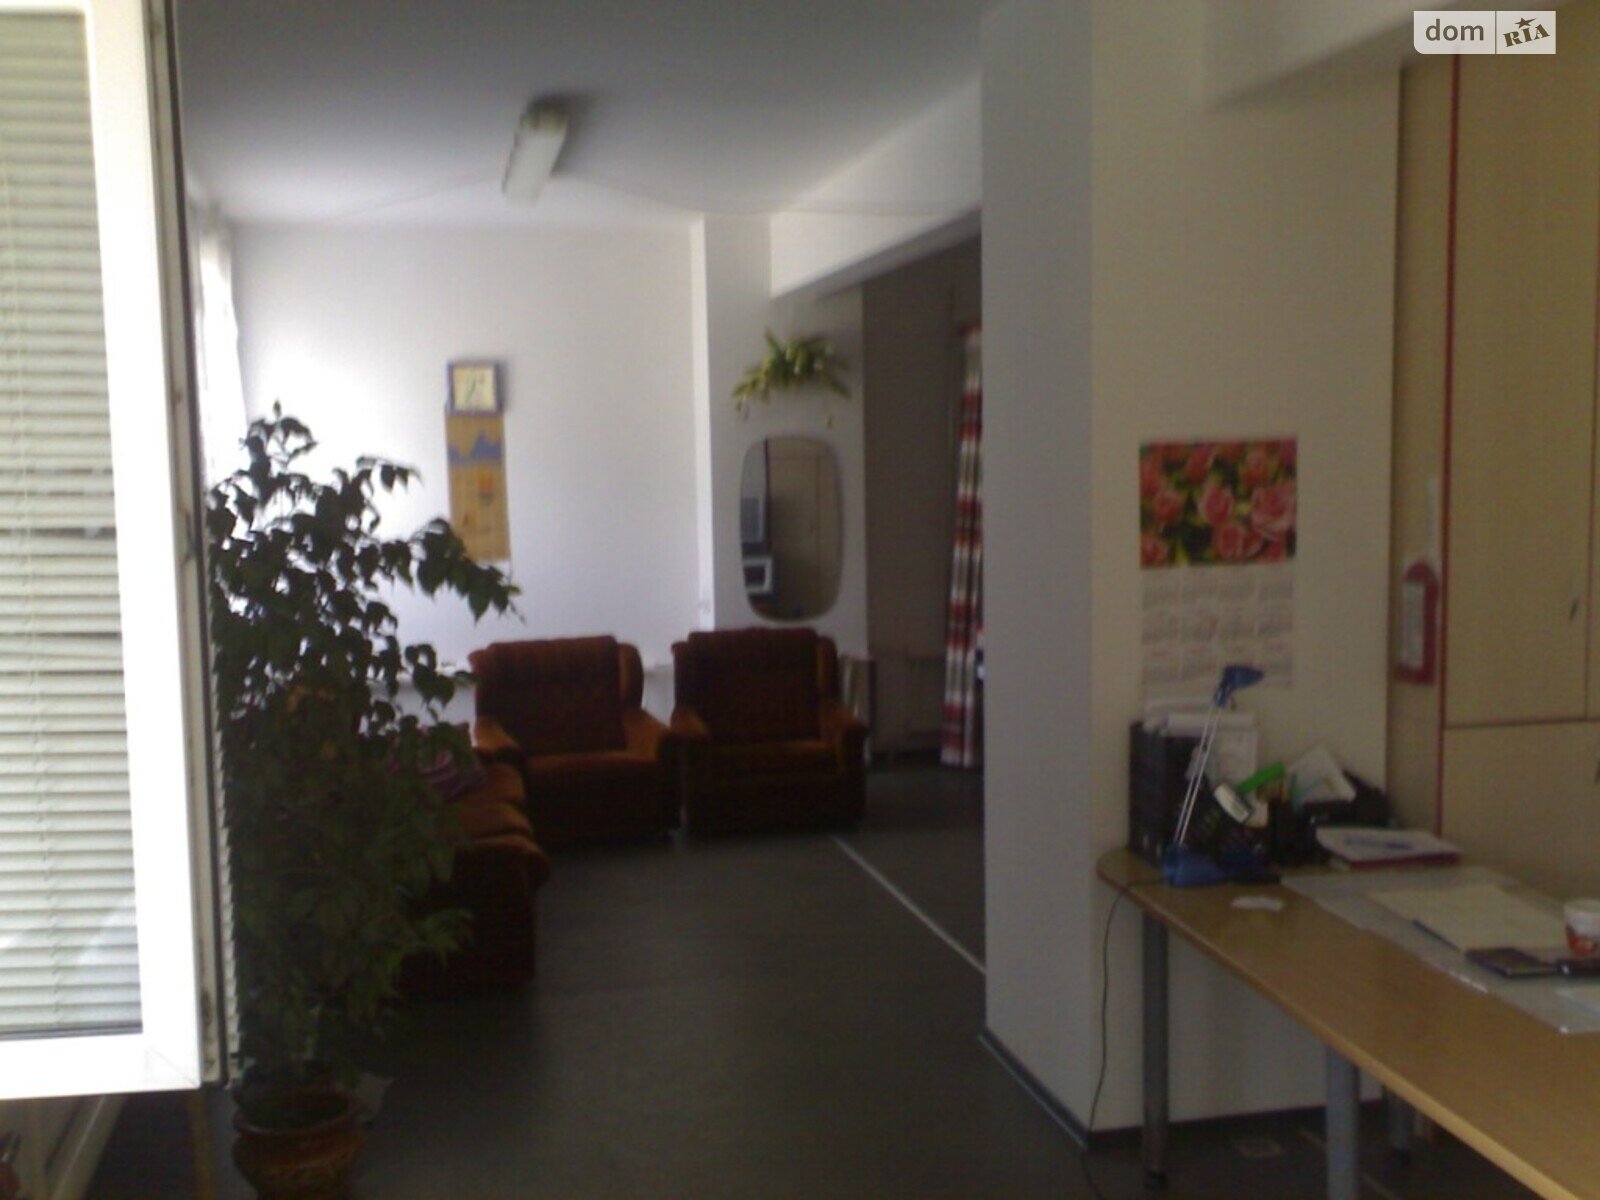 Аренда офисного помещения в Виннице, Хмельницкое шоссе, помещений - 9, этаж - 2 фото 1